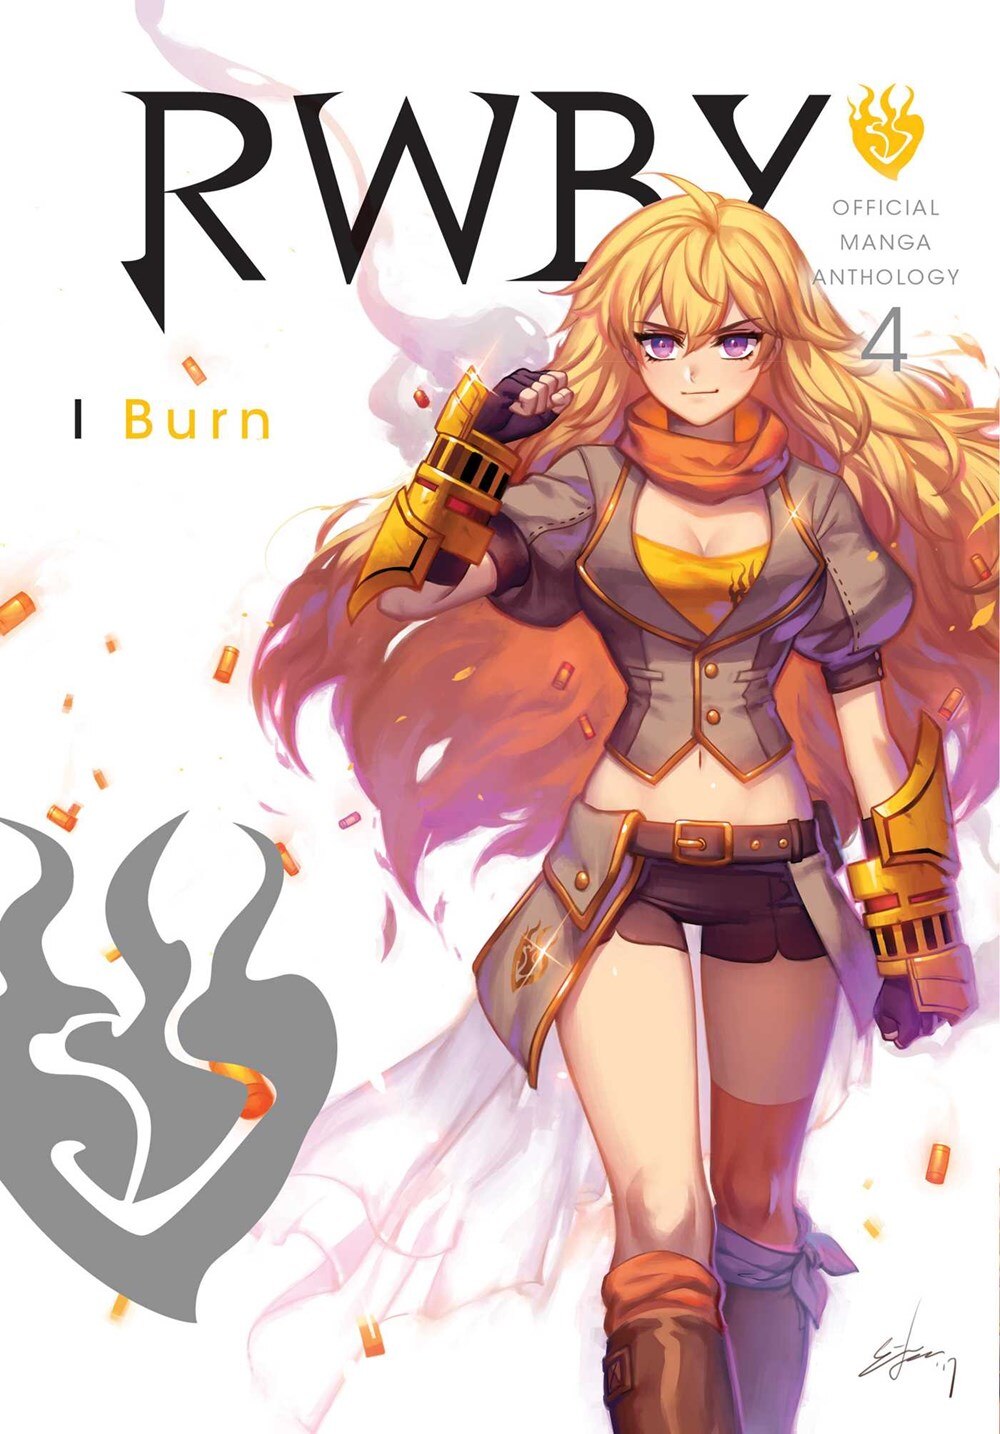 Rwby: Official Manga Anthology  Vol. 4  4: I Burn